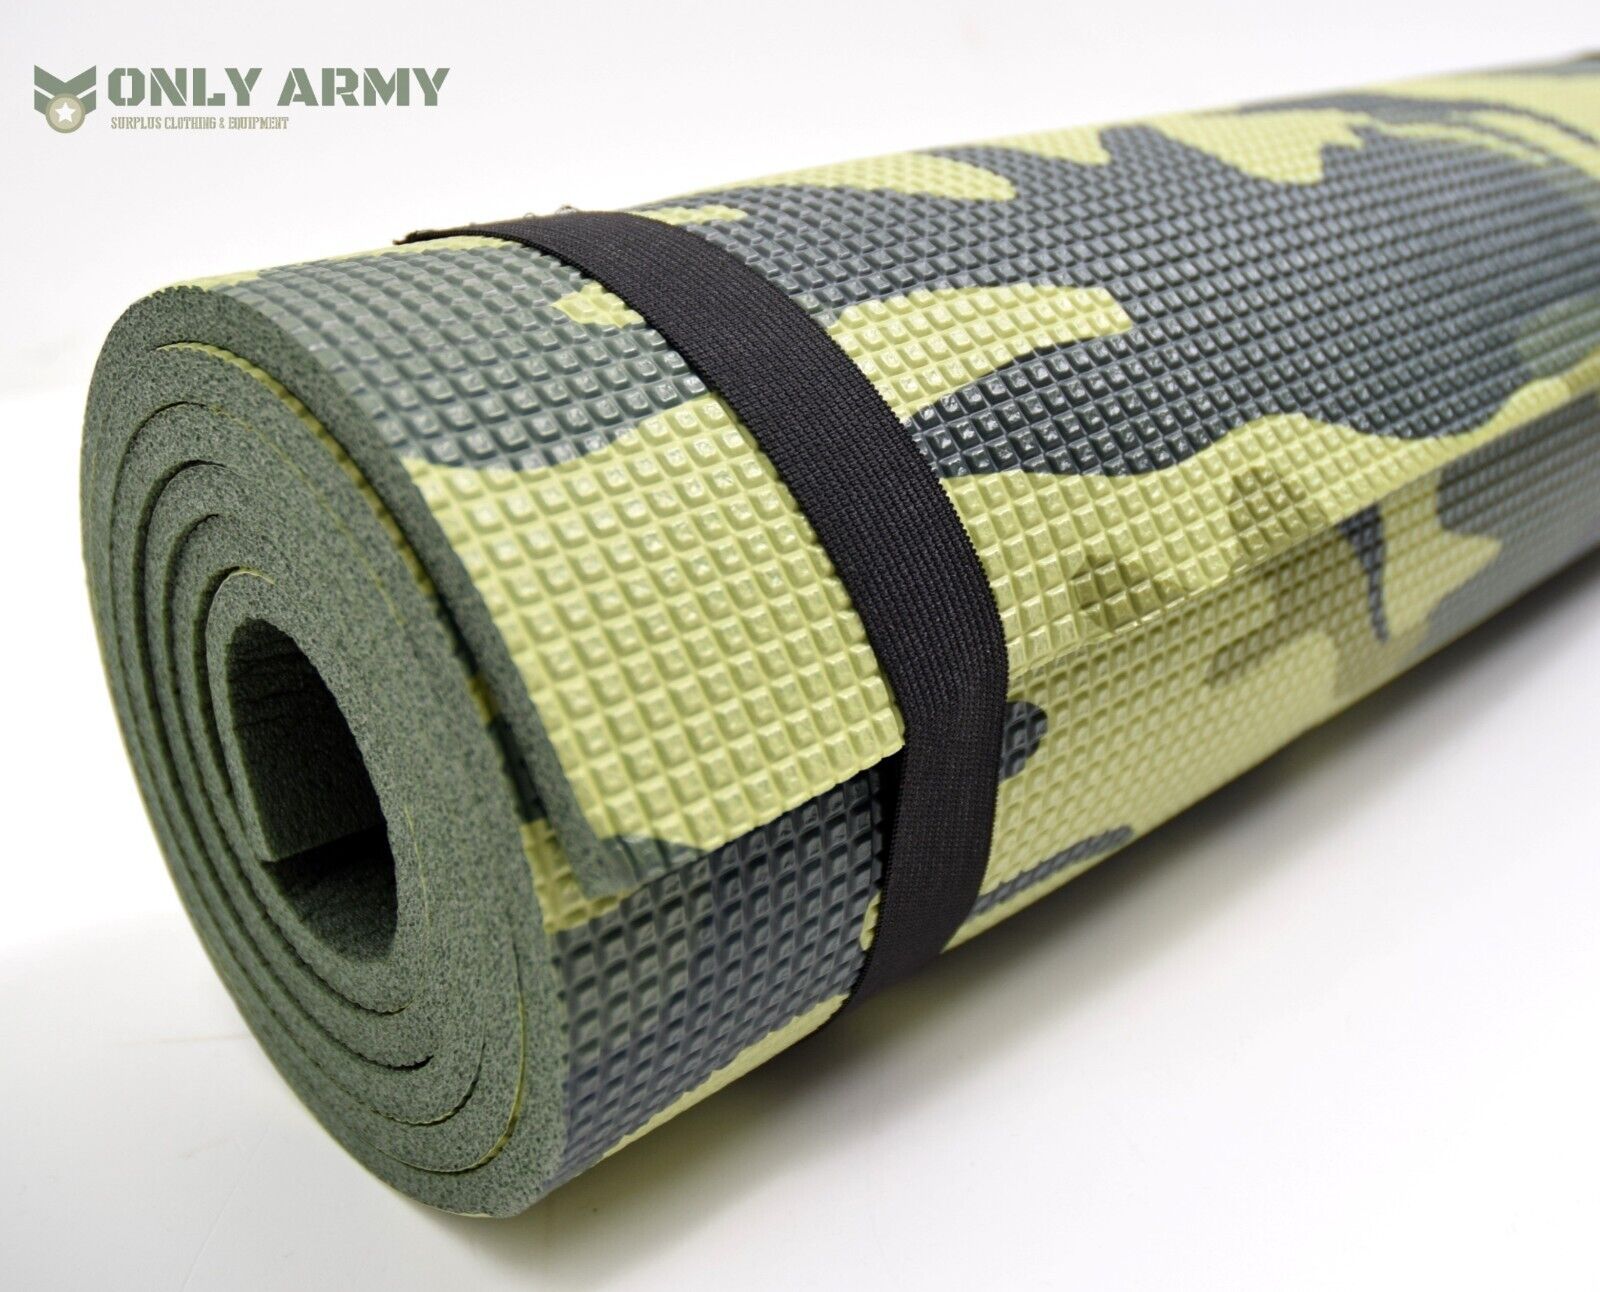 Czech Army Roll Mat M90 Issue Camo Sleeping Mat Compact Lightweight Comfortable